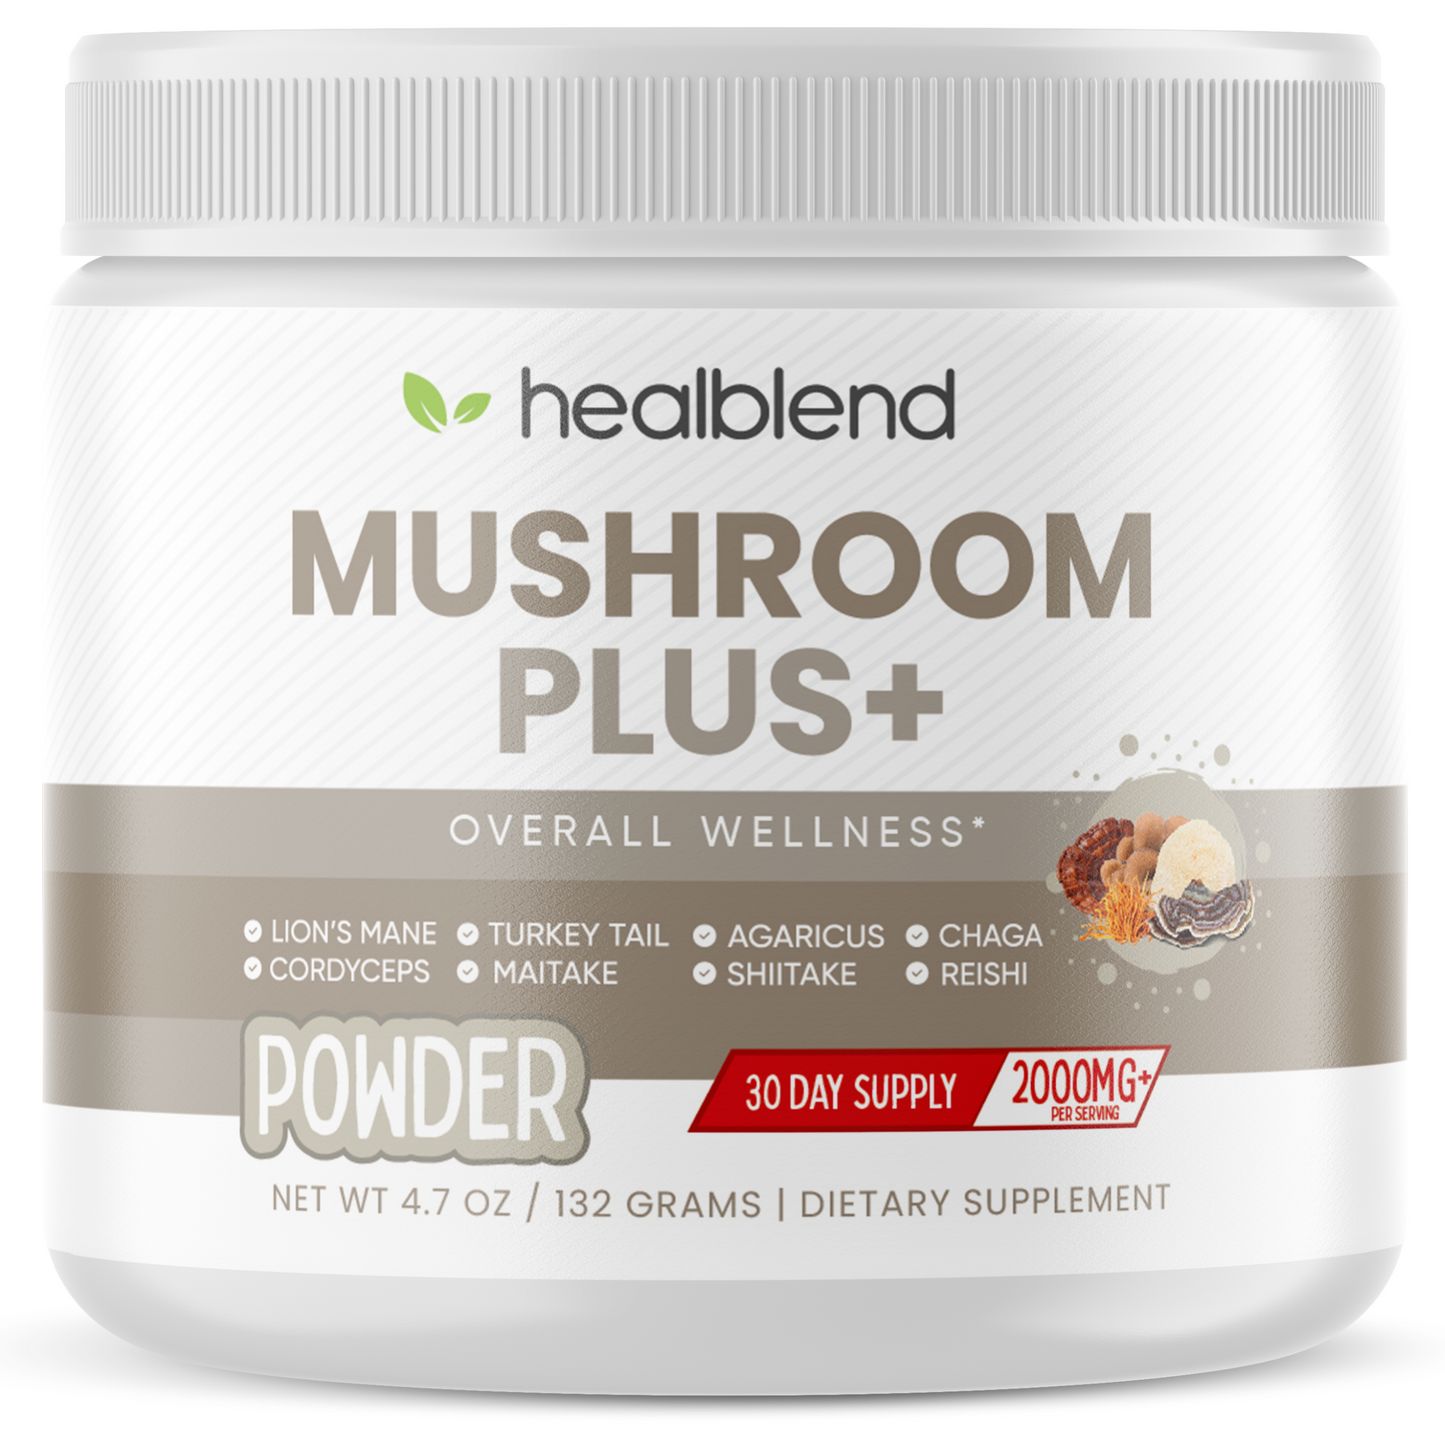 Mushroom Plus+ Powder